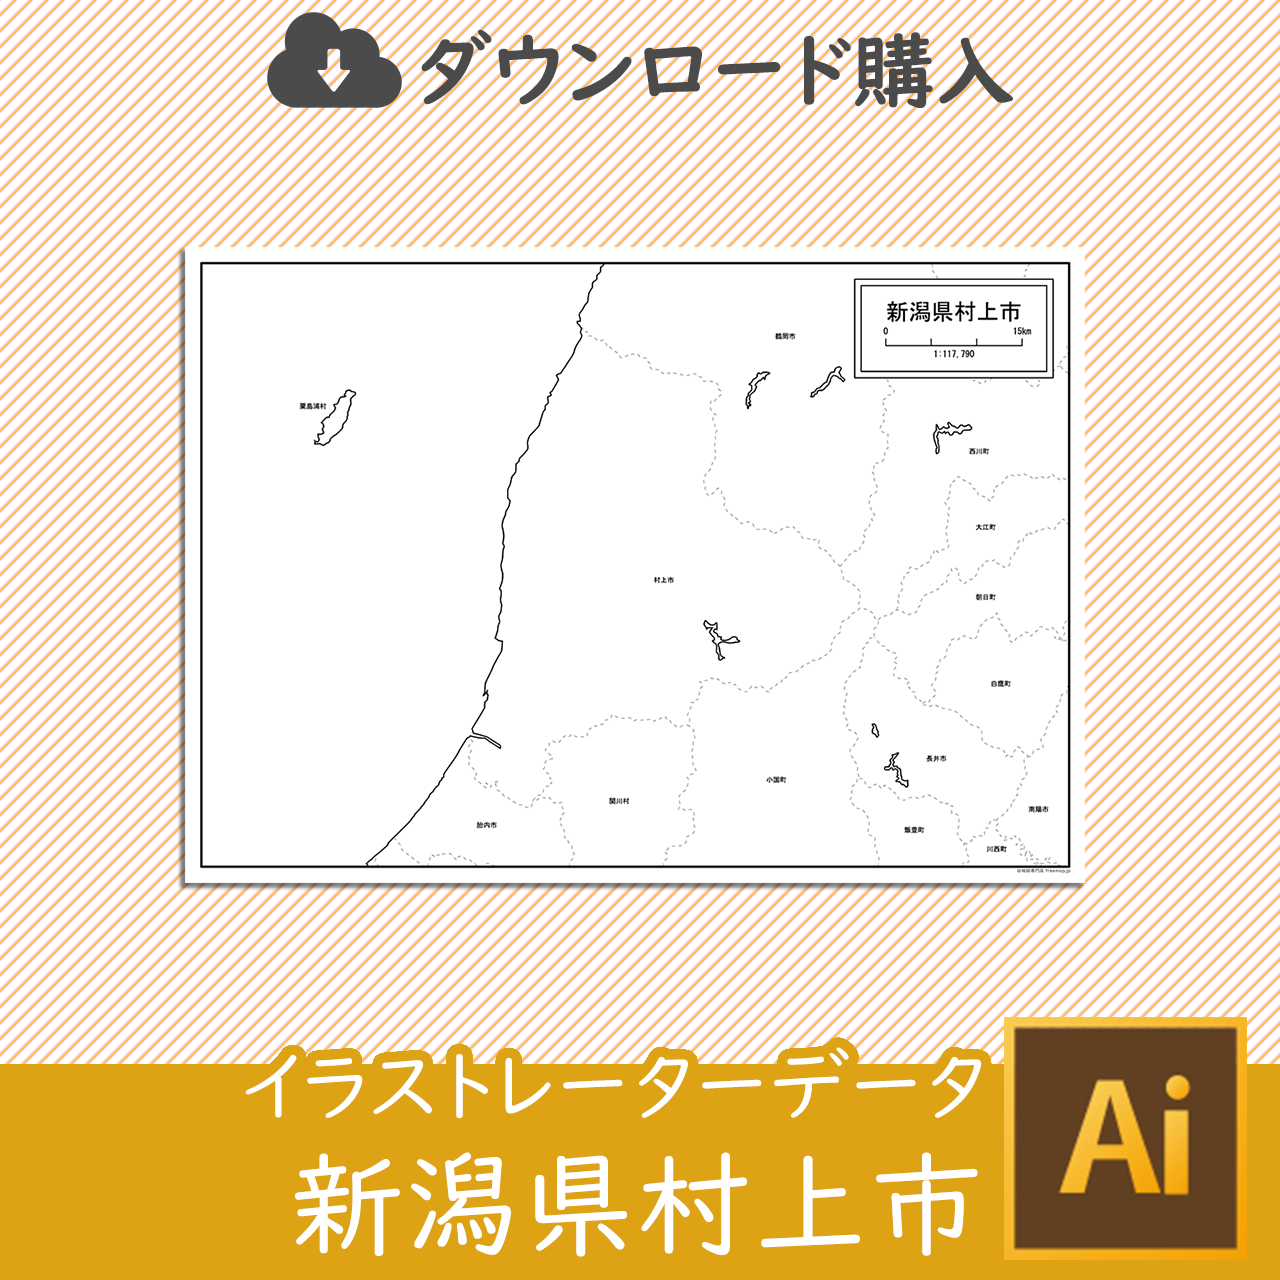 村上市のaiデータのサムネイル画像